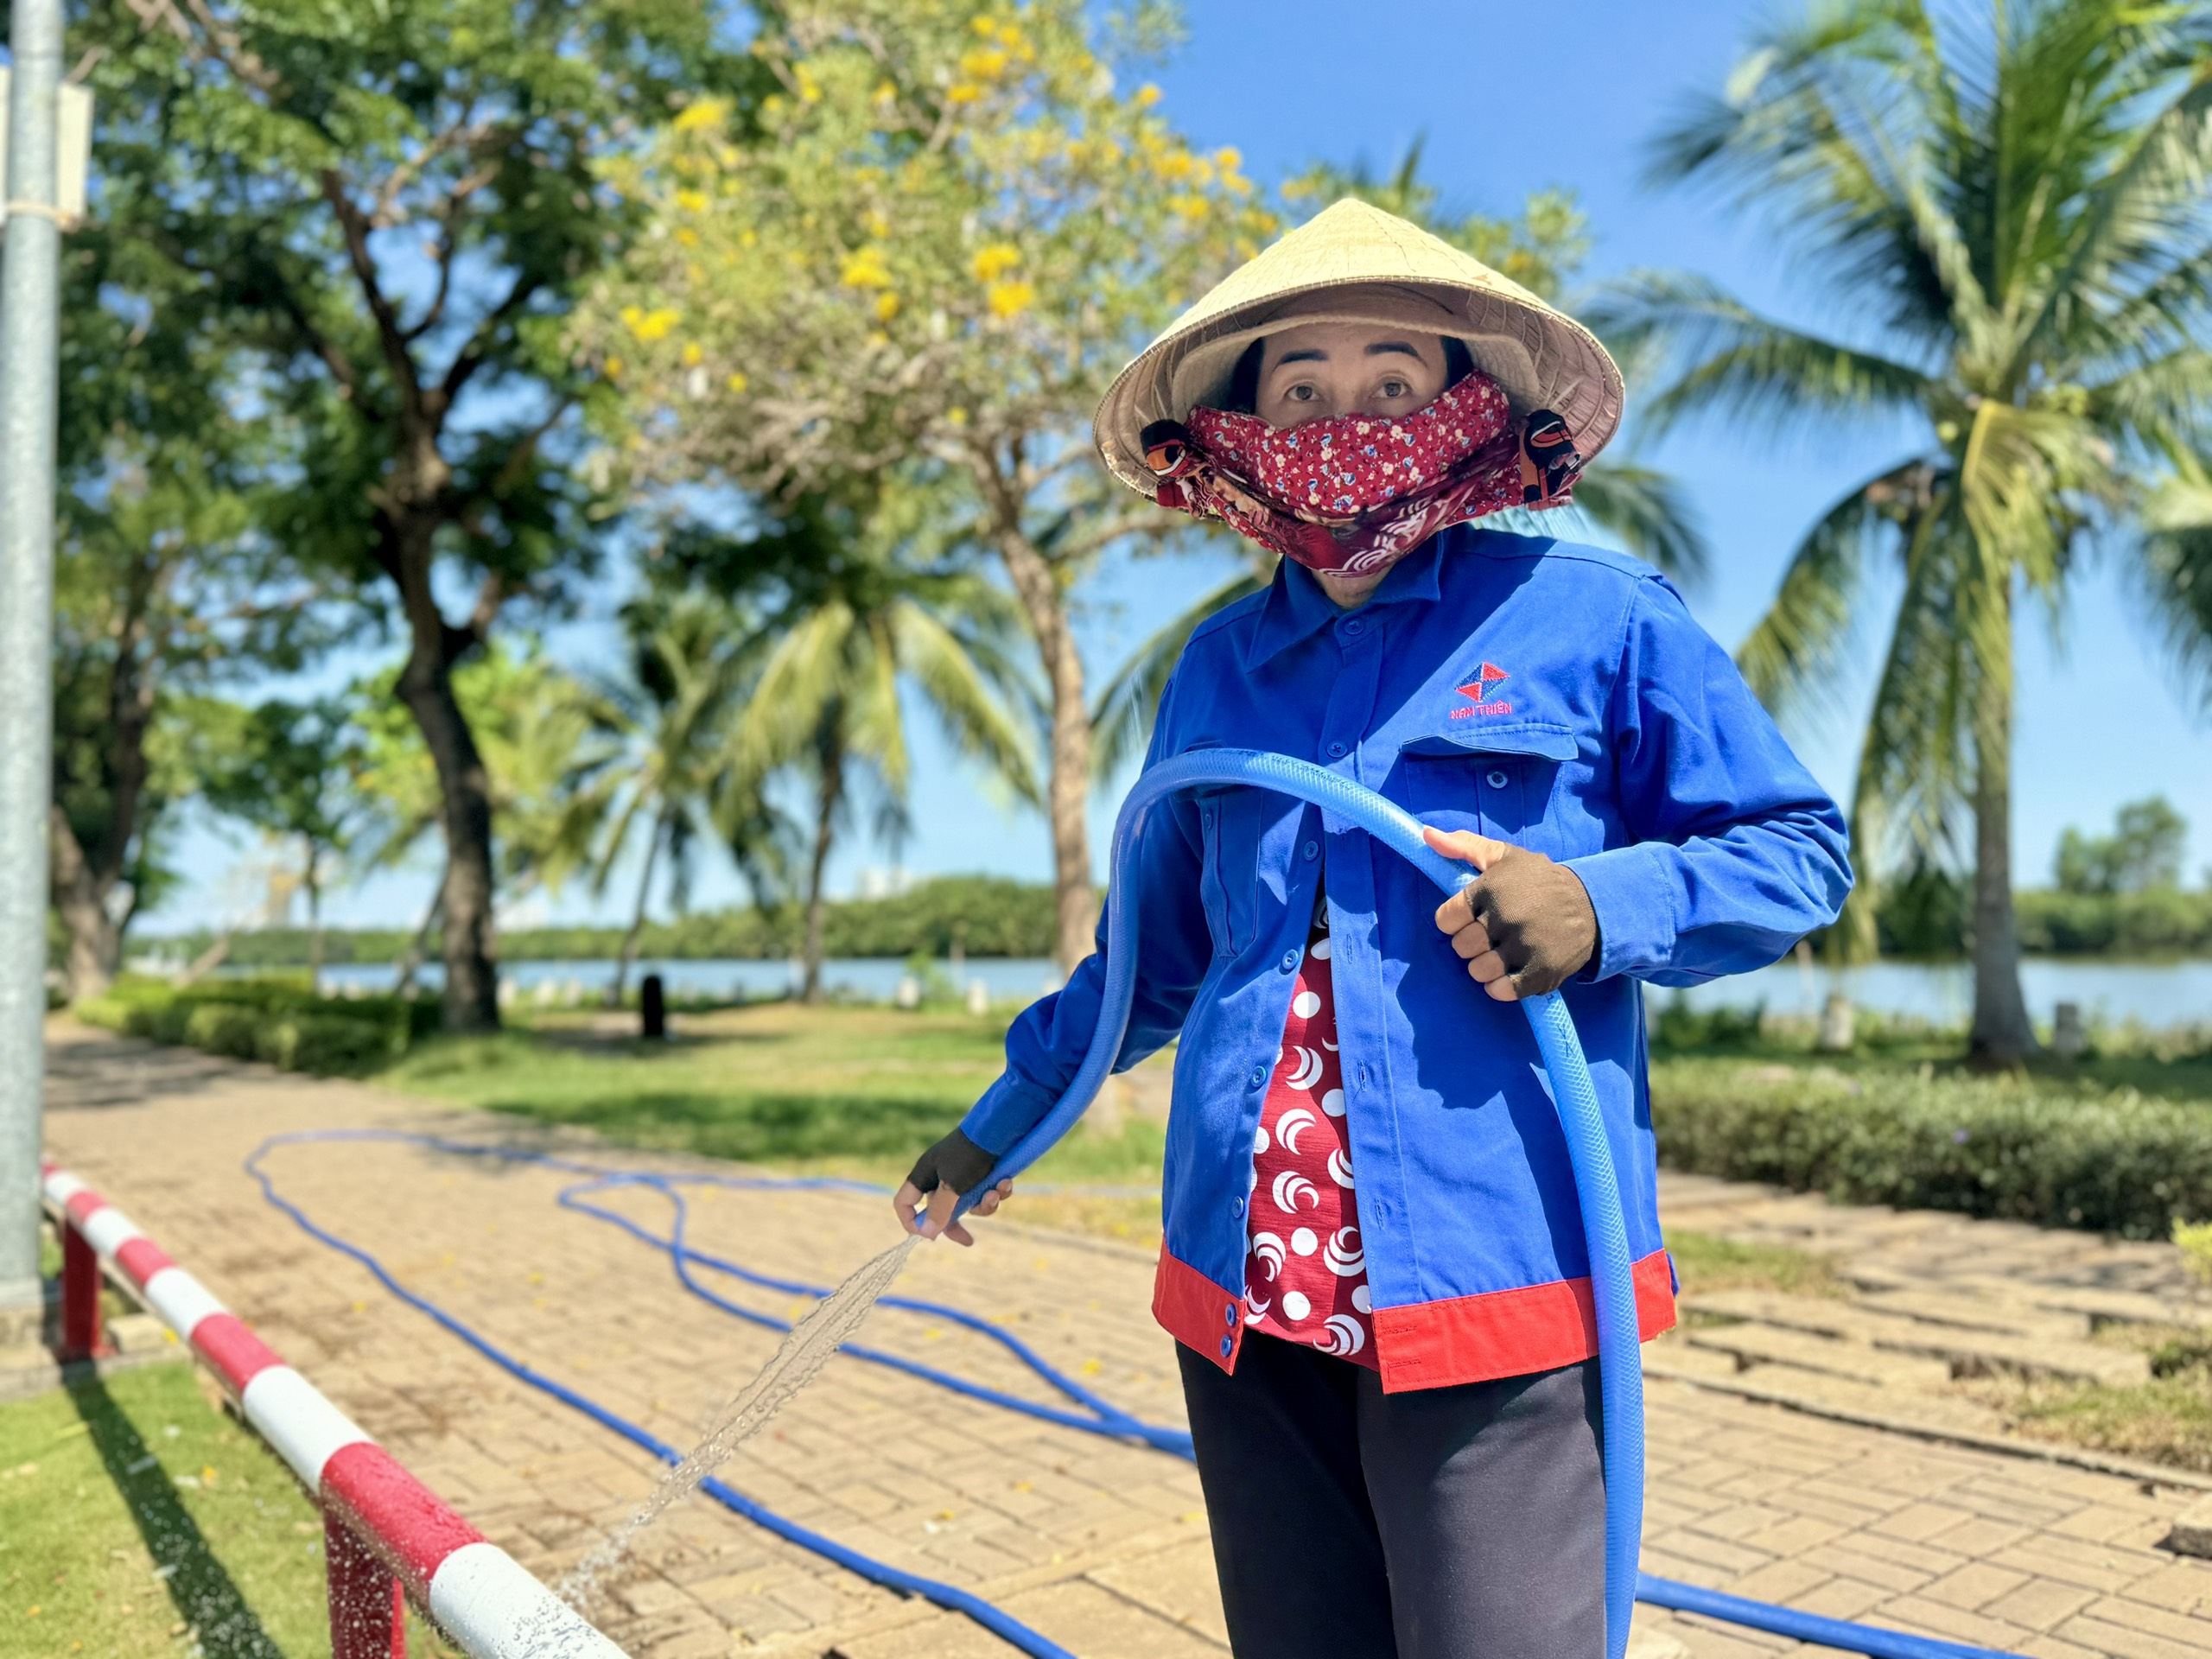 Bà Nguyễn Thị Mười Một (51 tuổi) tưới cây ở đường Trần Văn Trà, gần khu vực công viên bờ sông Panorama vẫn cảm thấy dễ chịu,  không quá nóng bức